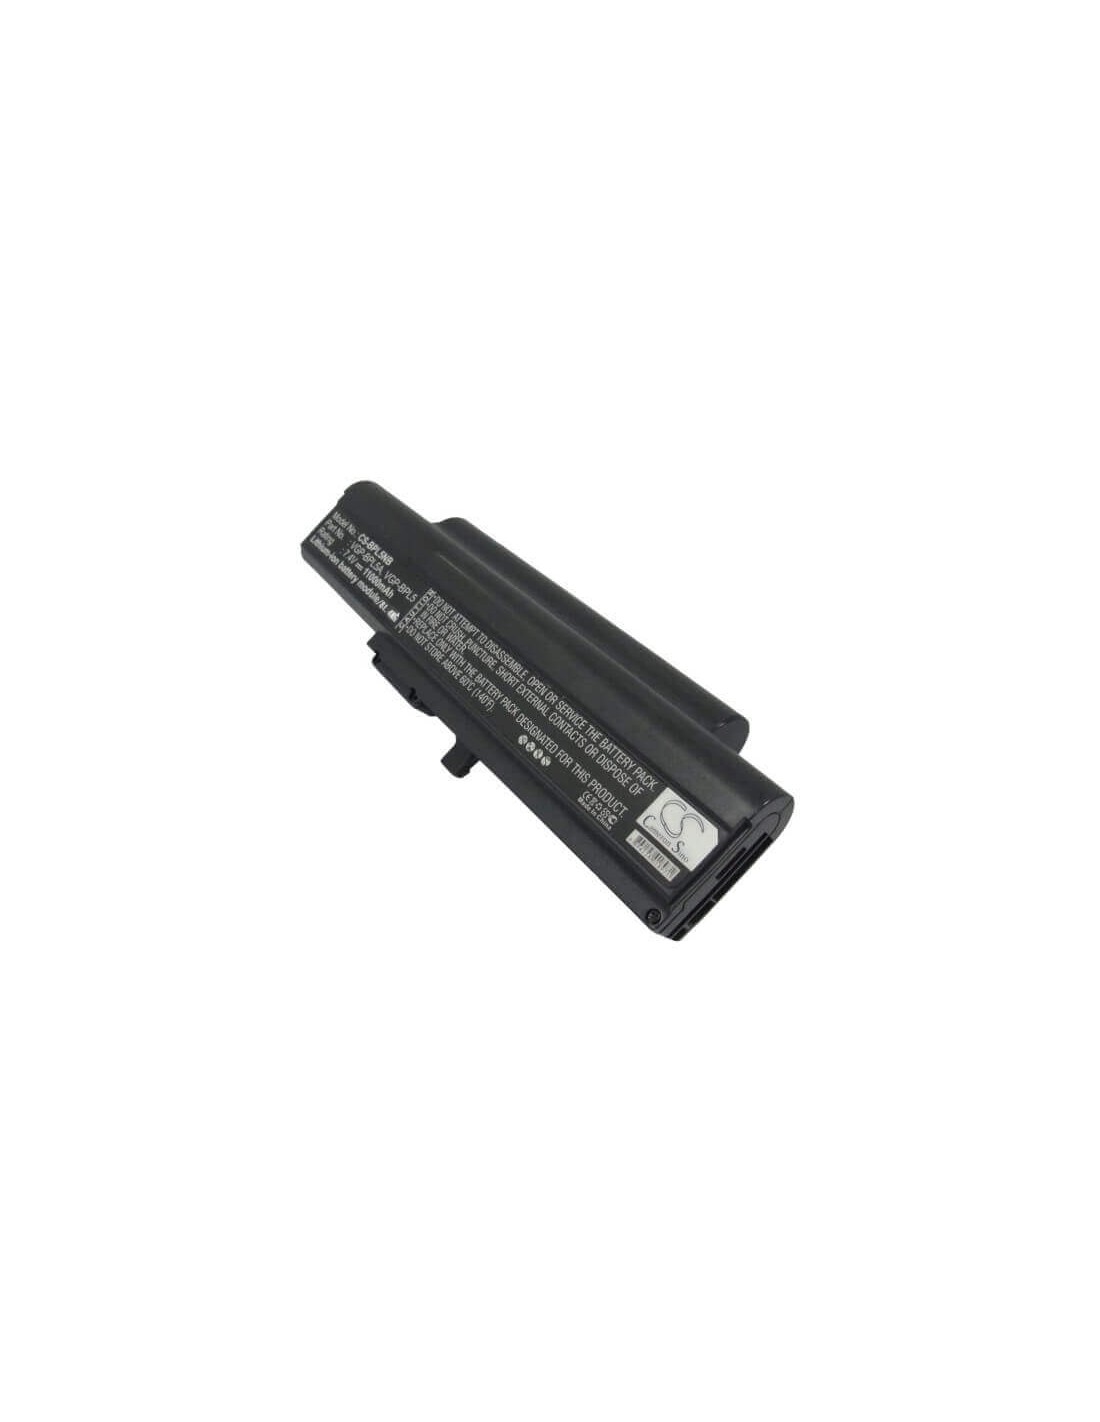 Black Battery for Sony Vaio Vgn-tx56c/w, Vaio Vgn-tx16sp/w, Vaio Vgn-tx2xp/l 7.4V, 11000mAh - 81.40Wh